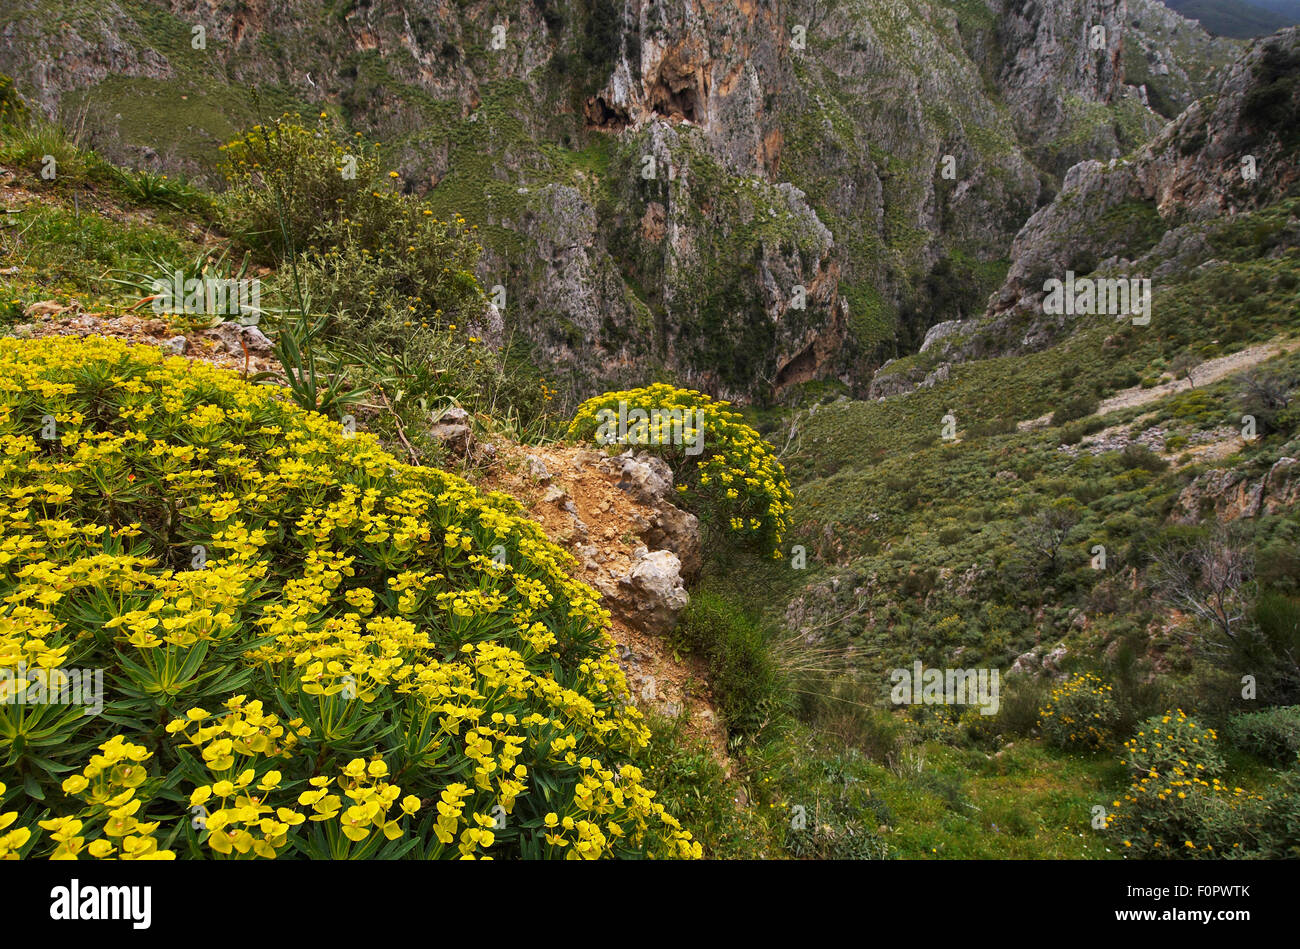 Tree spurge (Euphorbia dendroides) plants flowering, Topolia, Crete, Greece, April 2009 Stock Photo